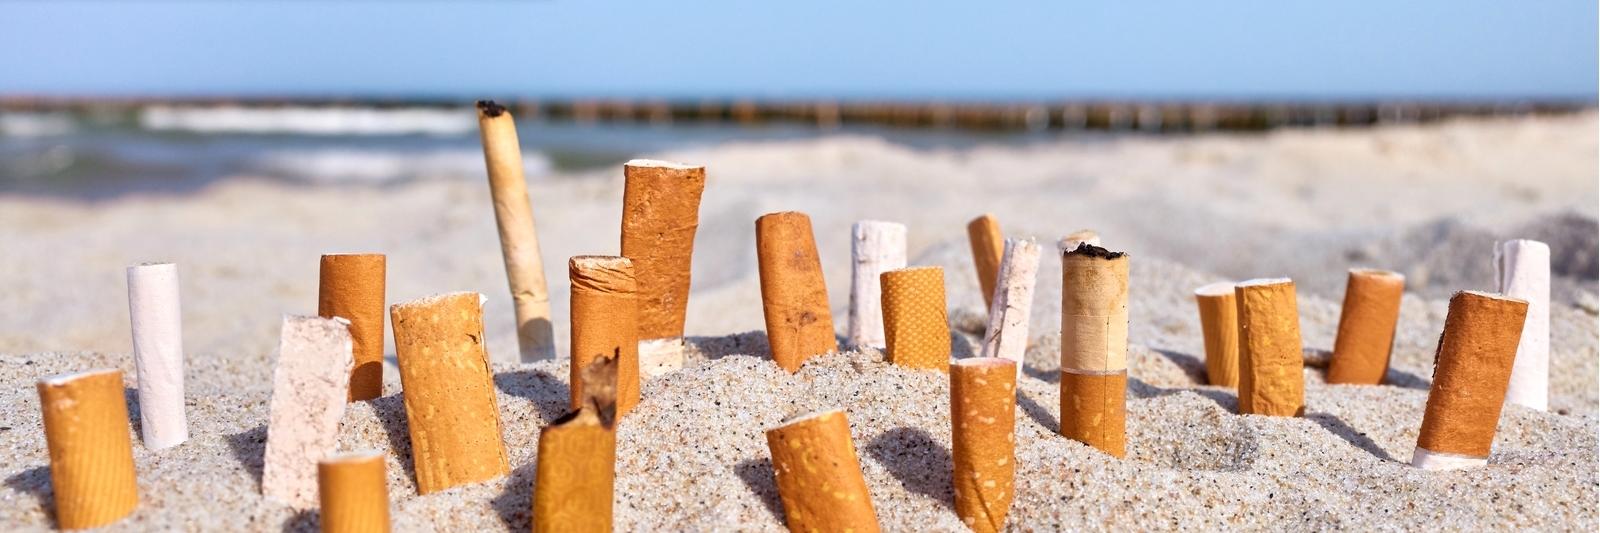 De Peiling: Stop vervuiling door statiegeld op sigarettenpeuken - NH Nieuws